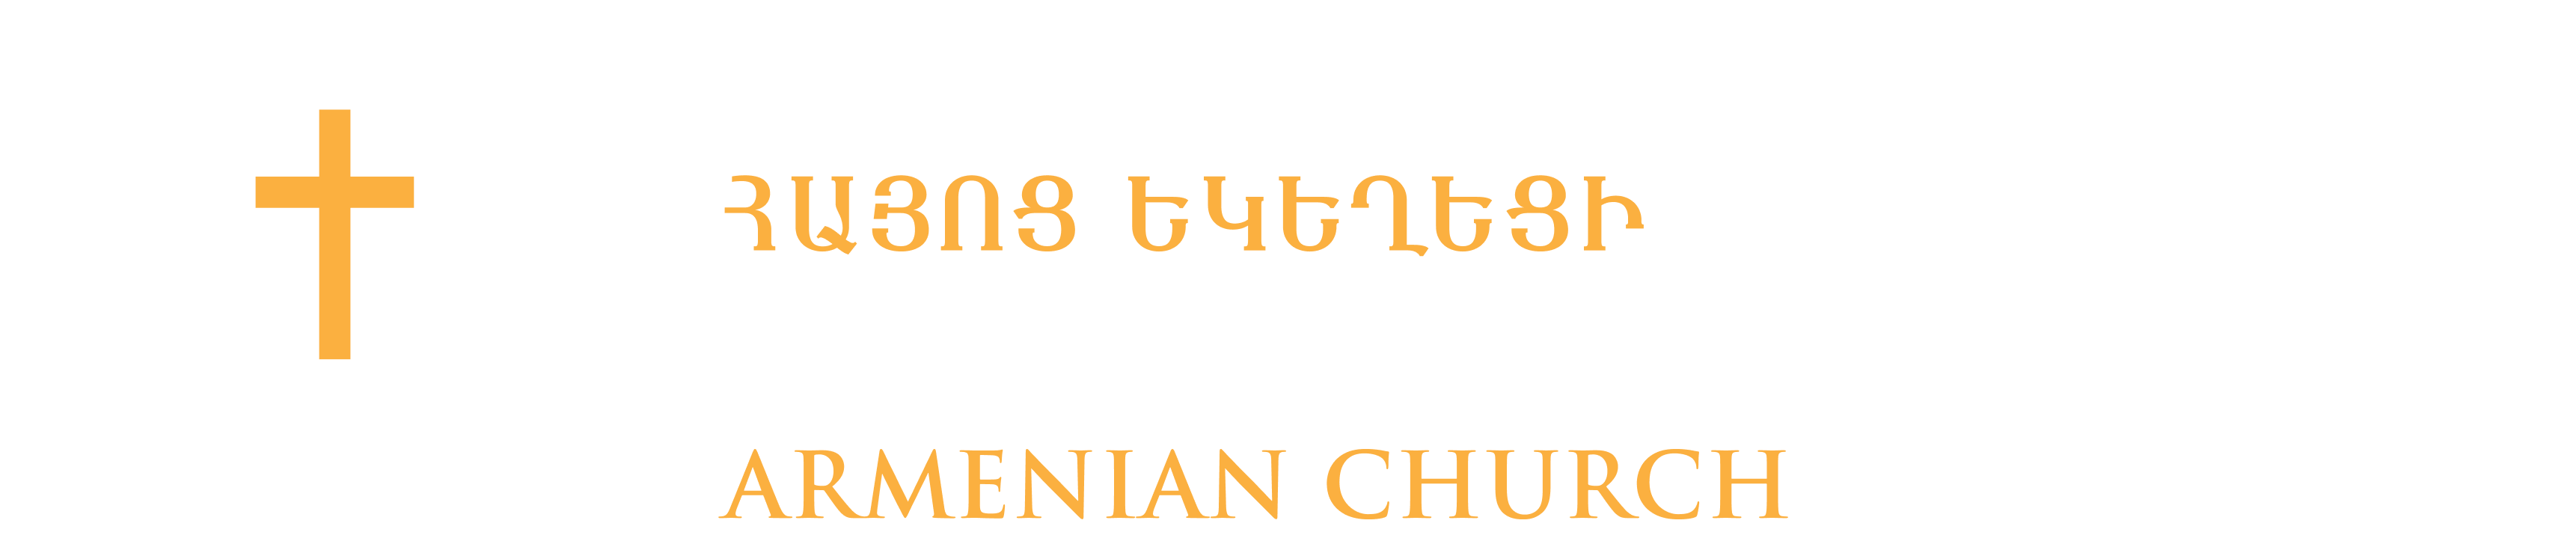 Christian Outreach